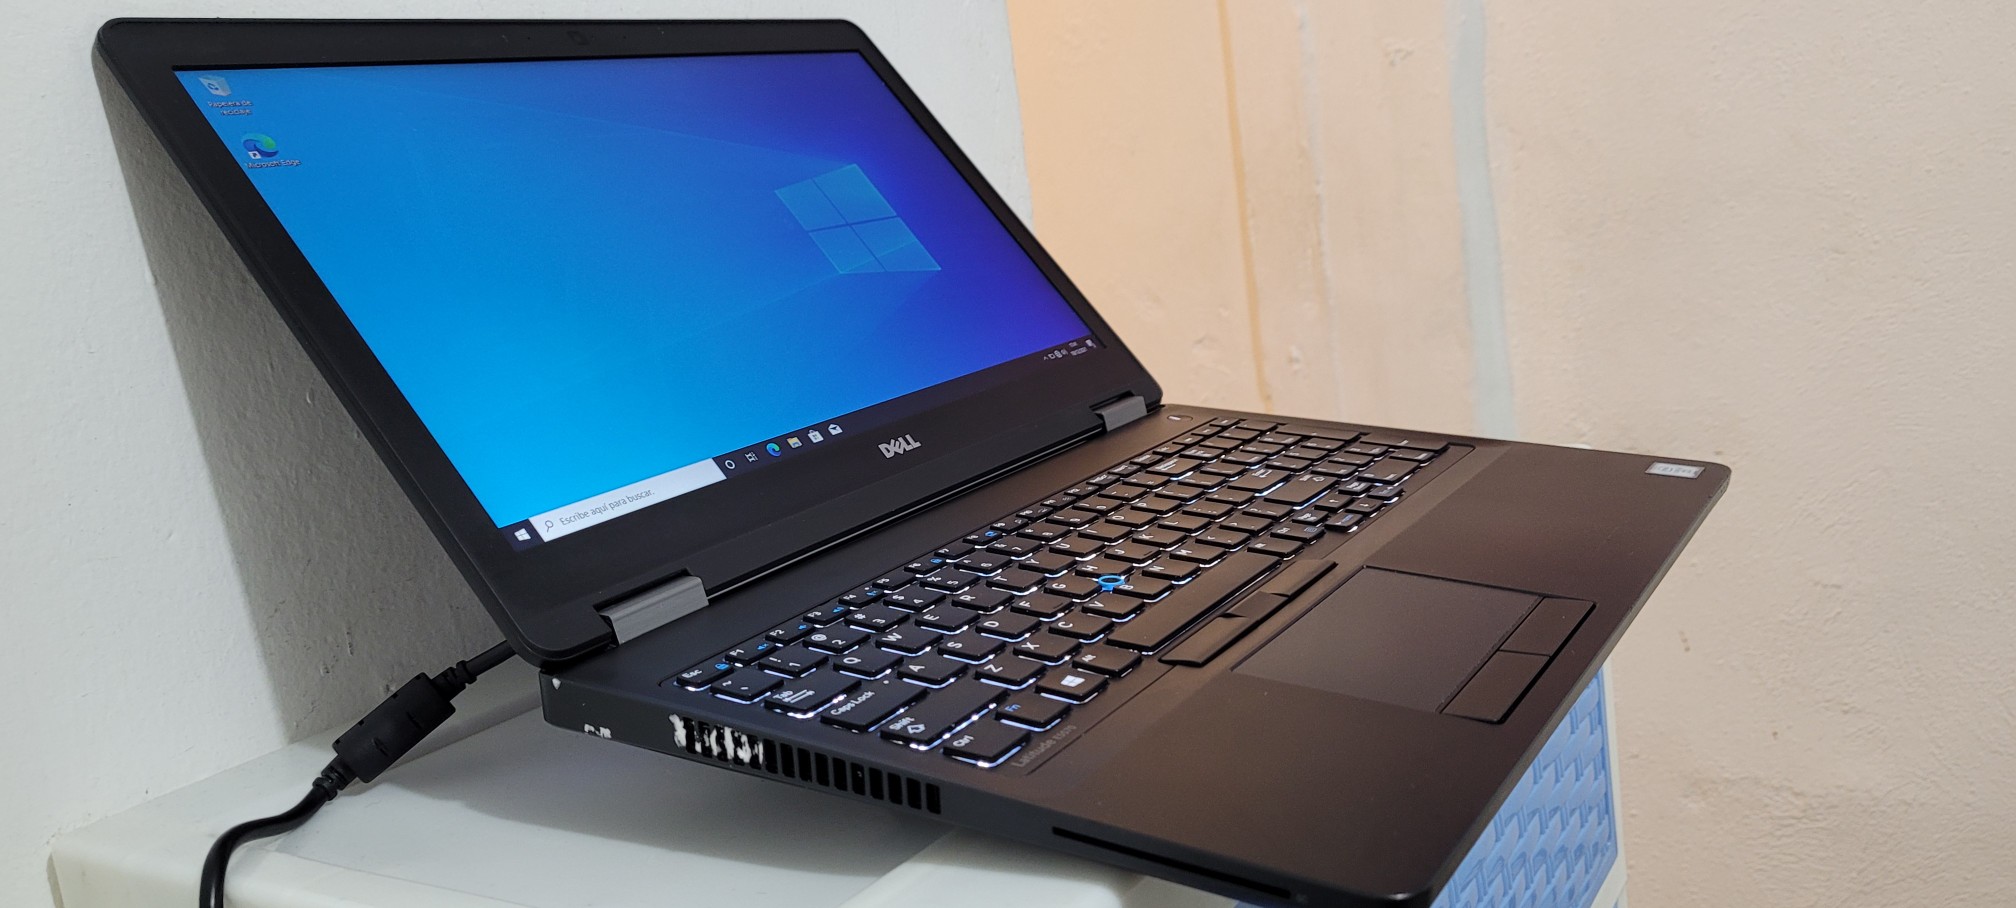 computadoras y laptops - Dell latitude 17 Pulg Core i7 Ram 8gb Disco 1000gb hdmi 1